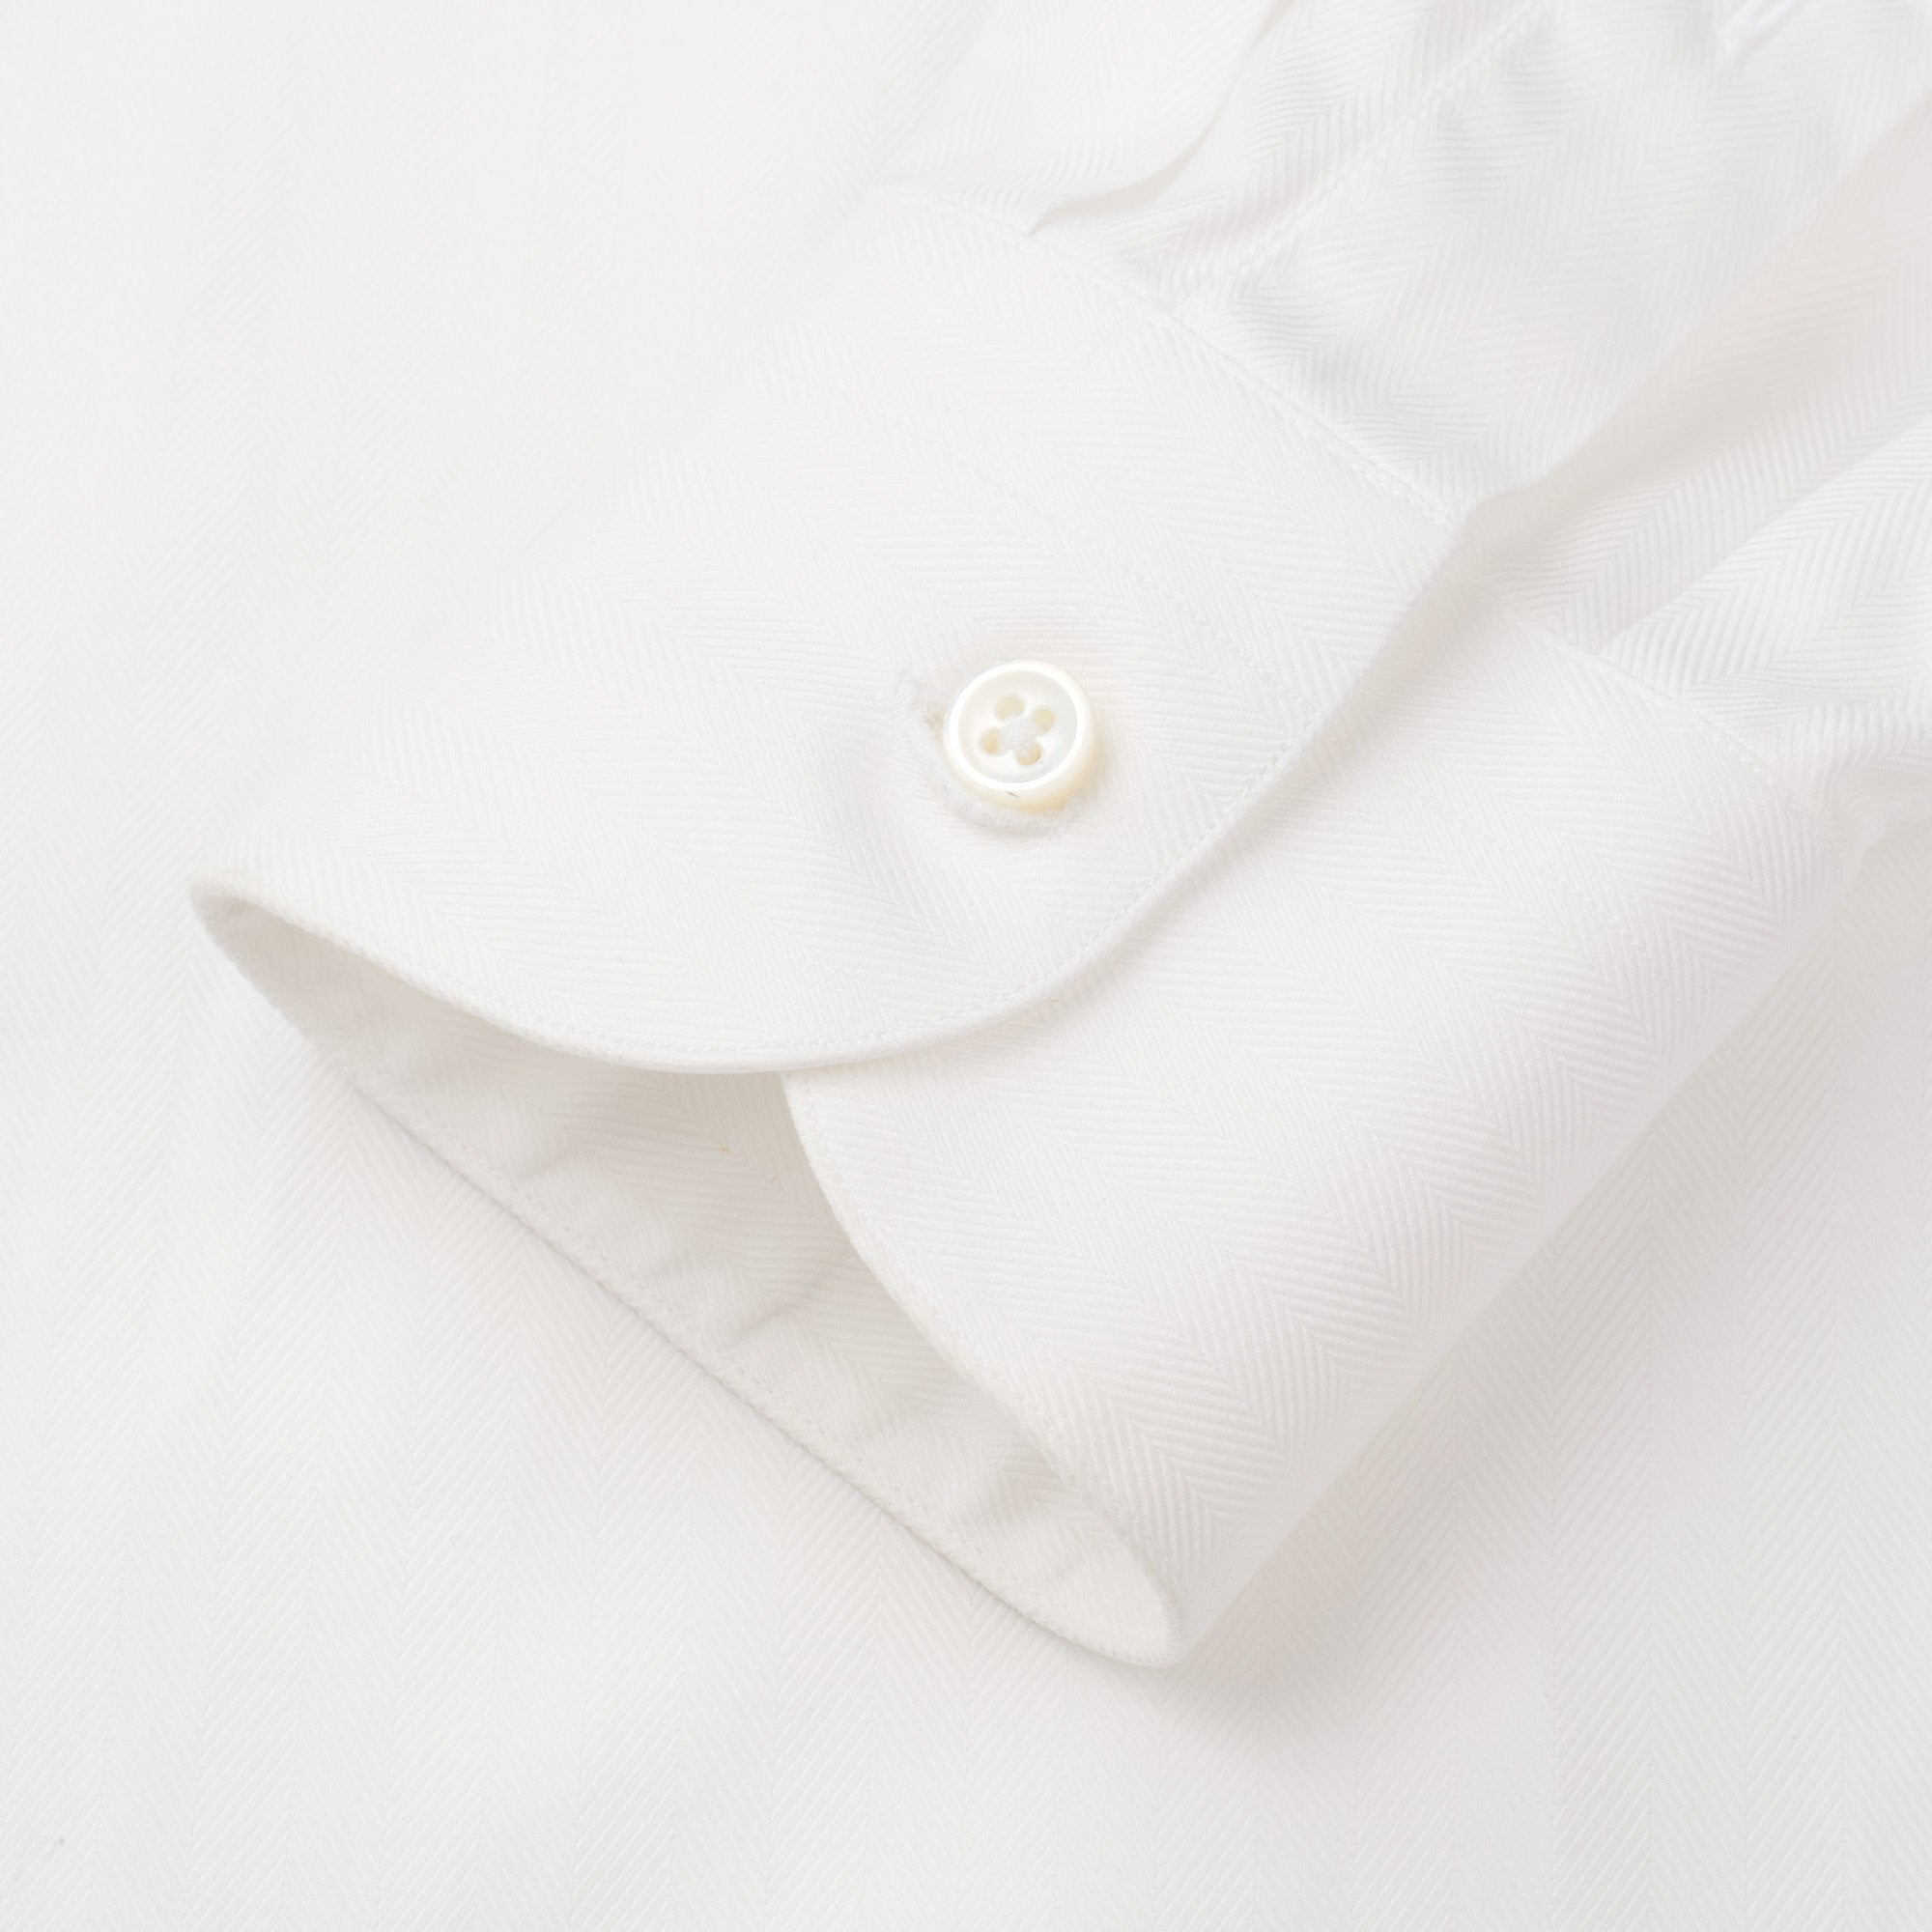 LORO PIANA Bespoke White Herringbone Cotton Dress Shirt US 16 Slim Fit